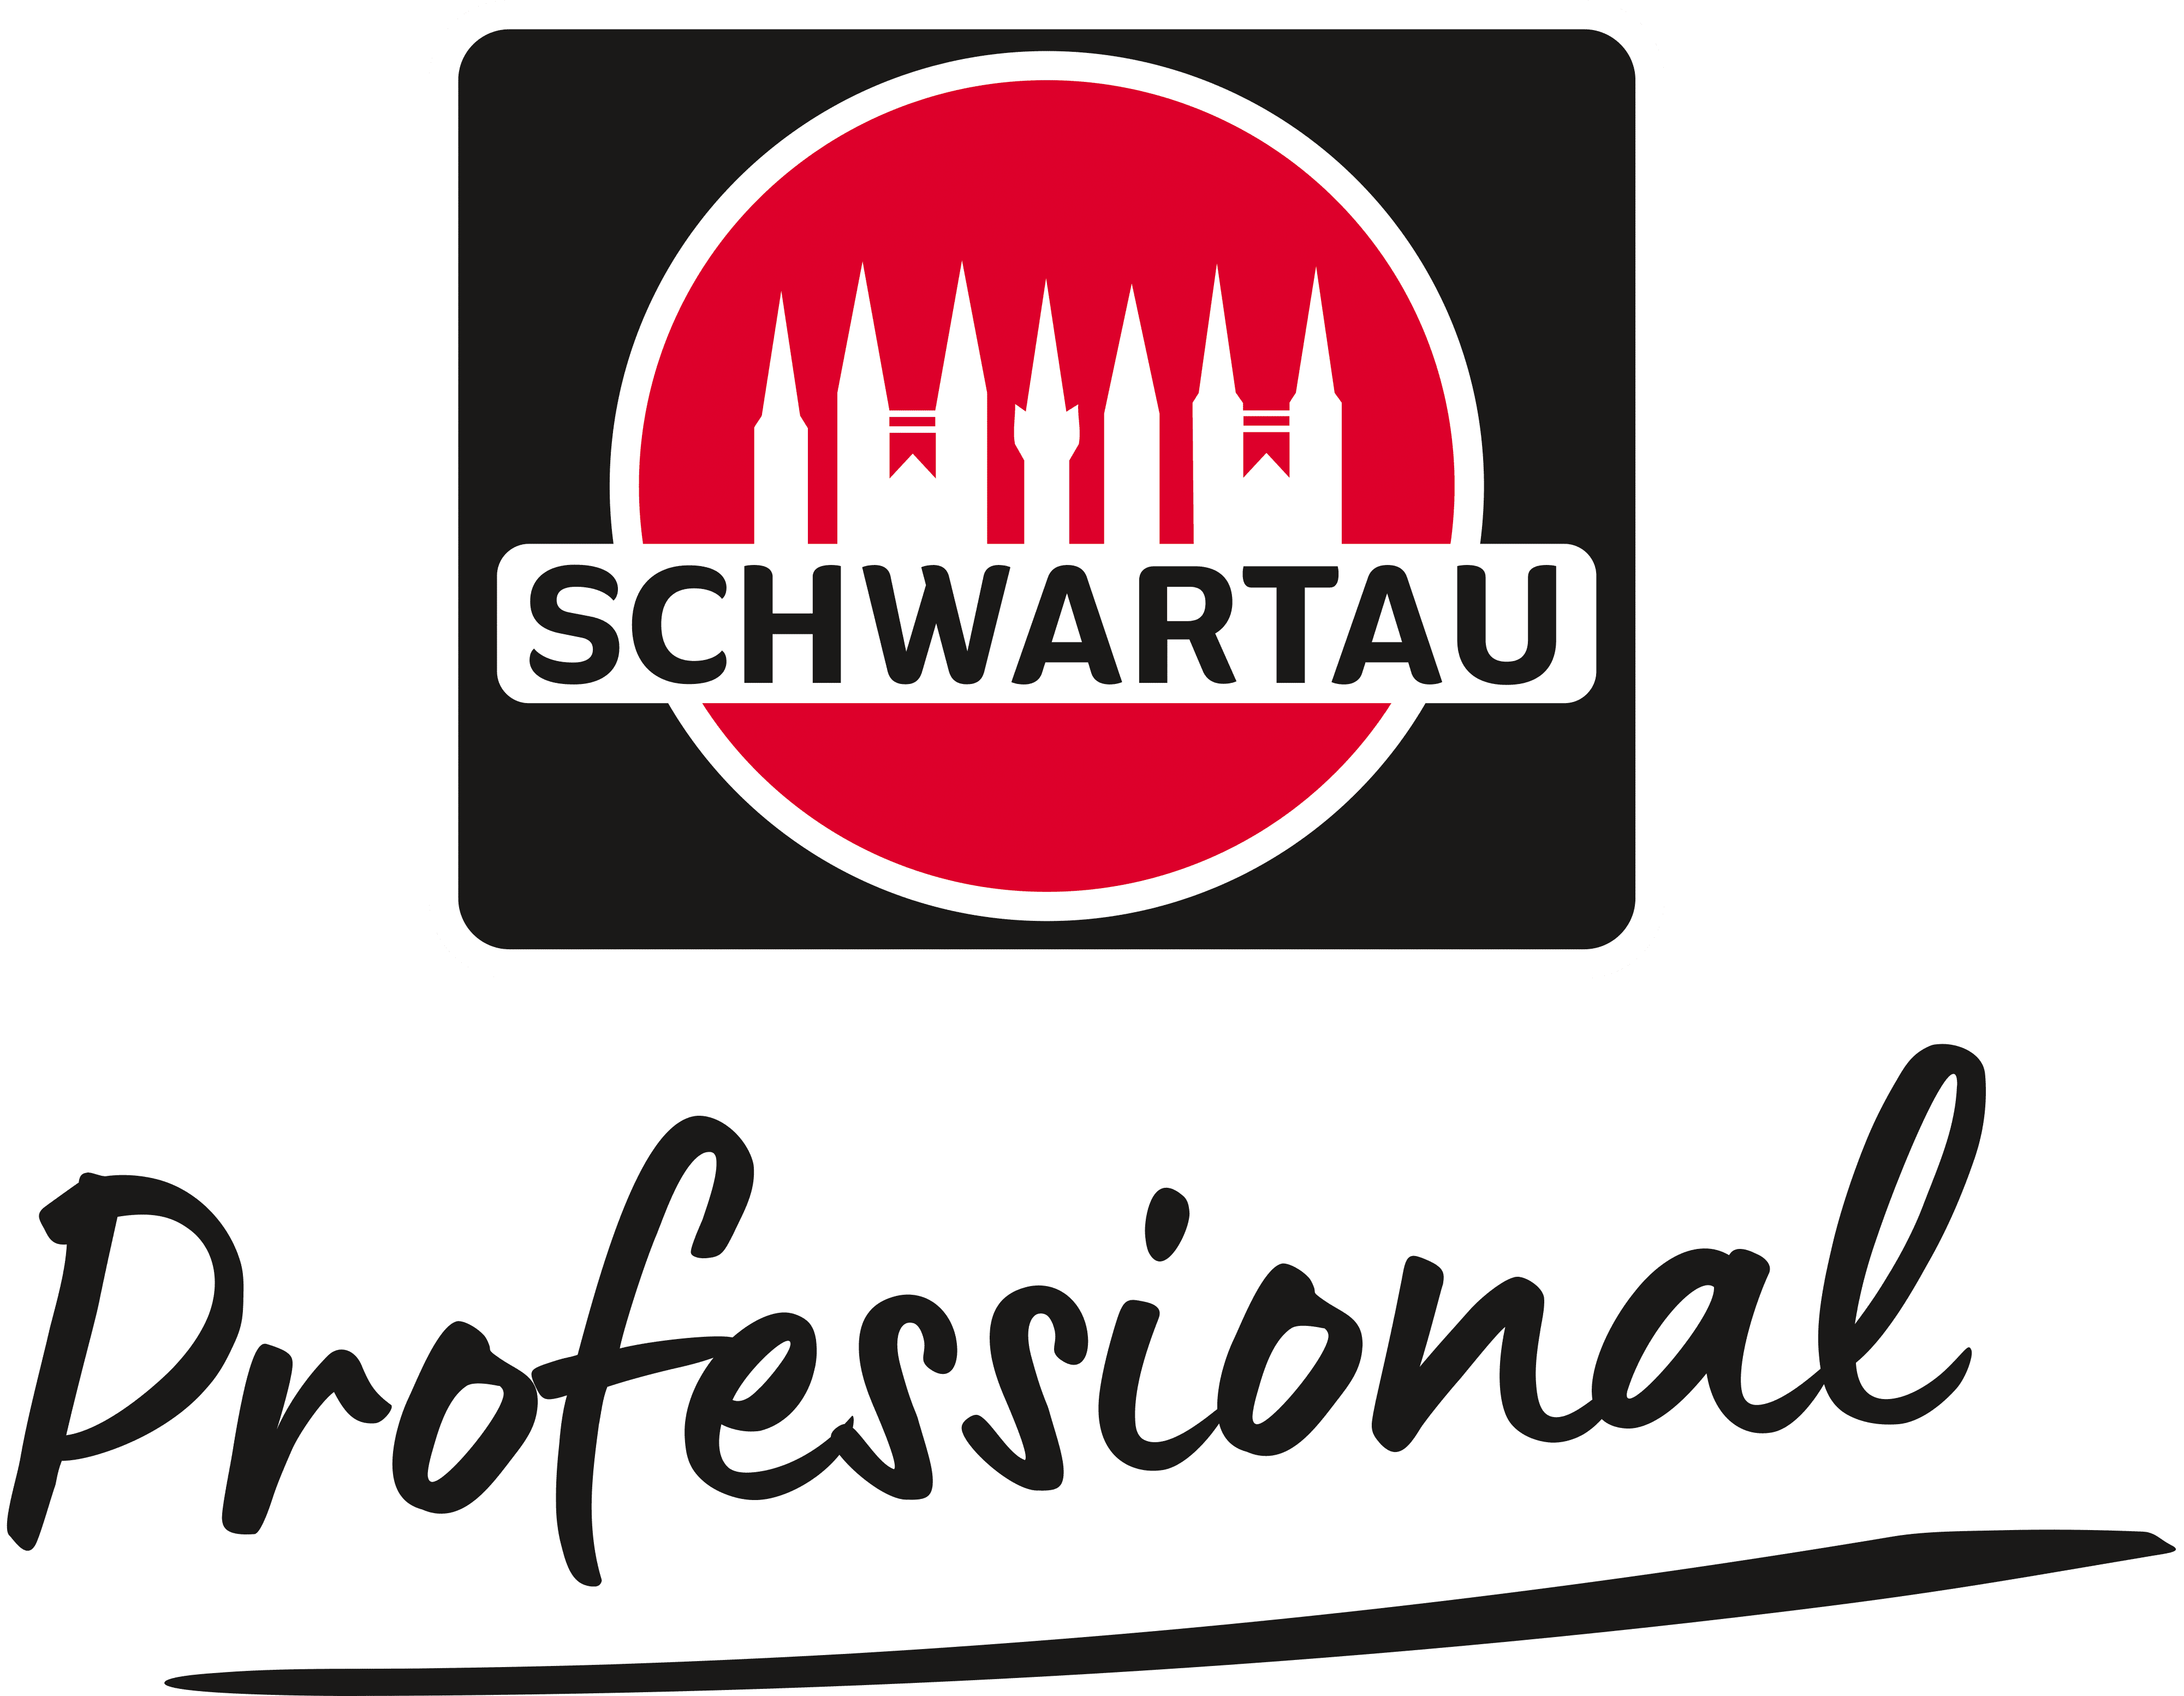 Schwartau Professional